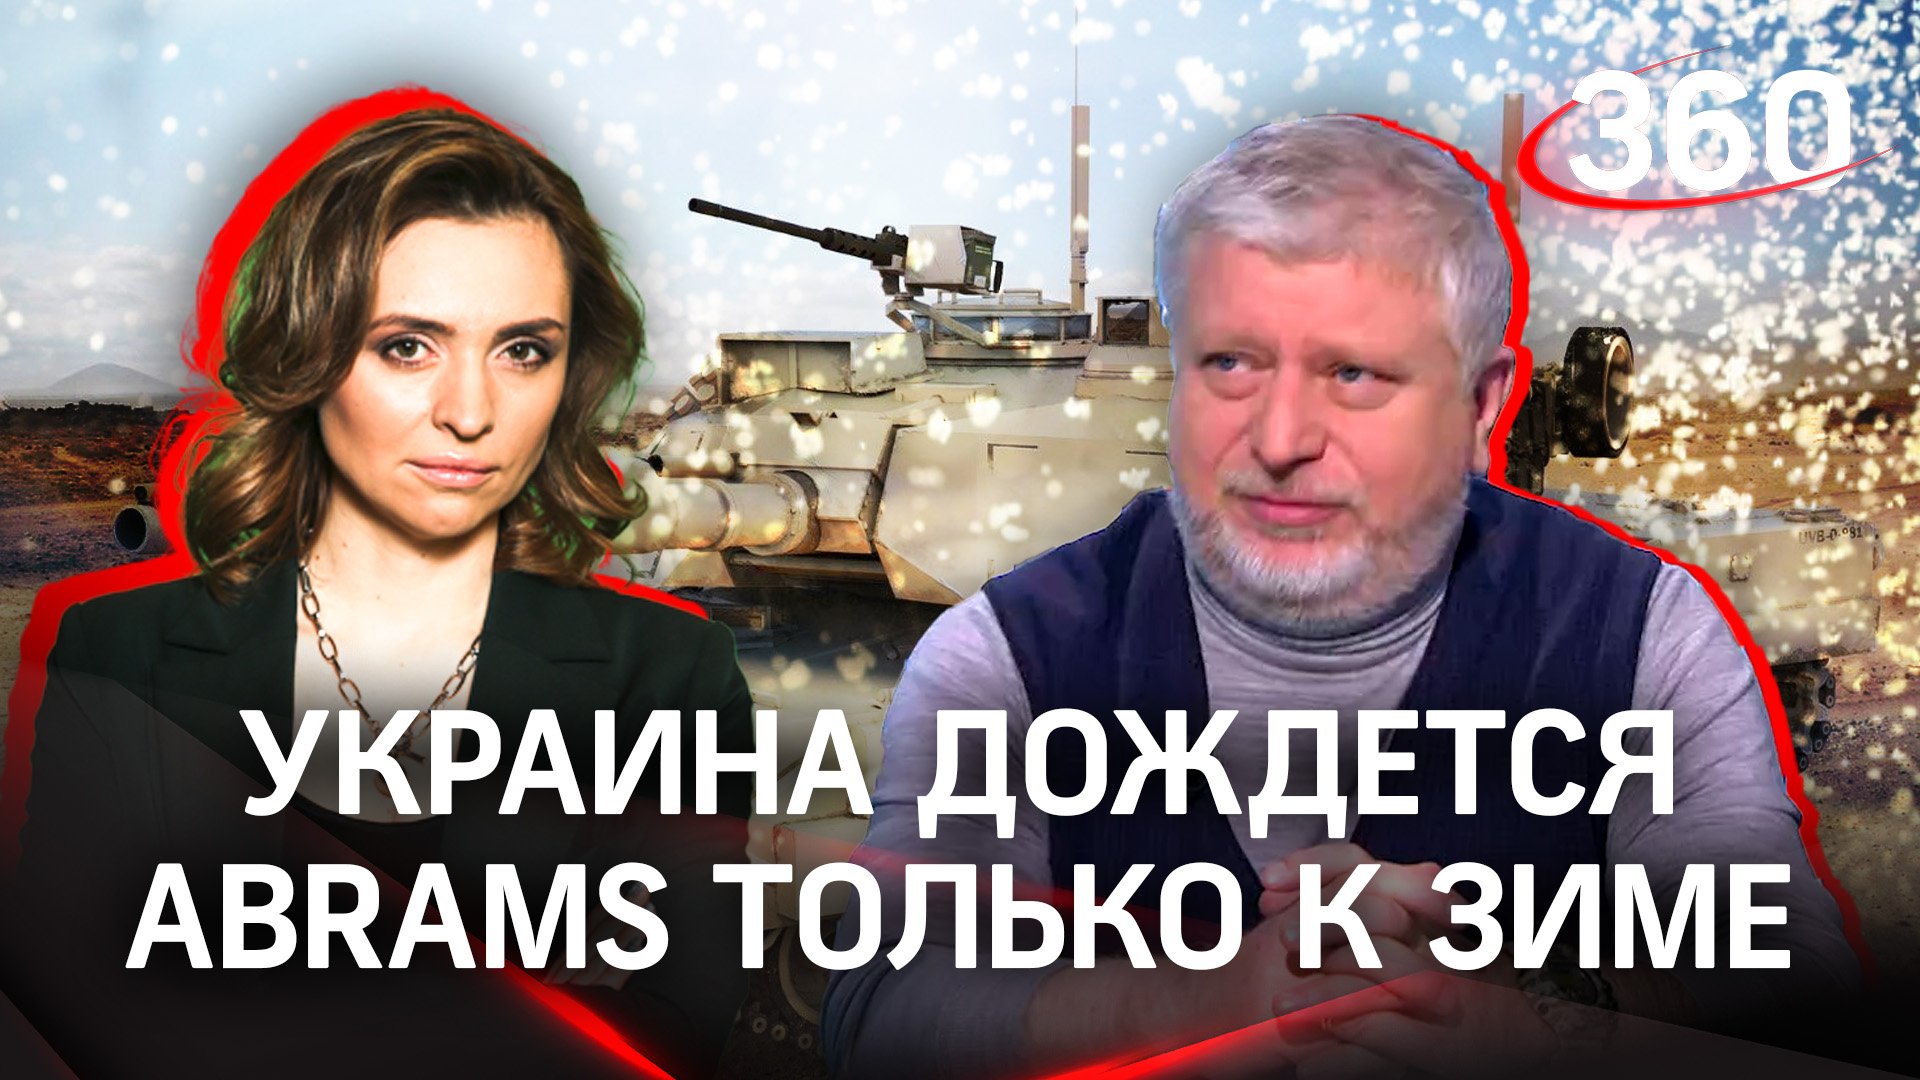 Украина дождётся обещанных Abrams лишь зимой. Есть ли в этом смысл? Малашенко. Саралидзе